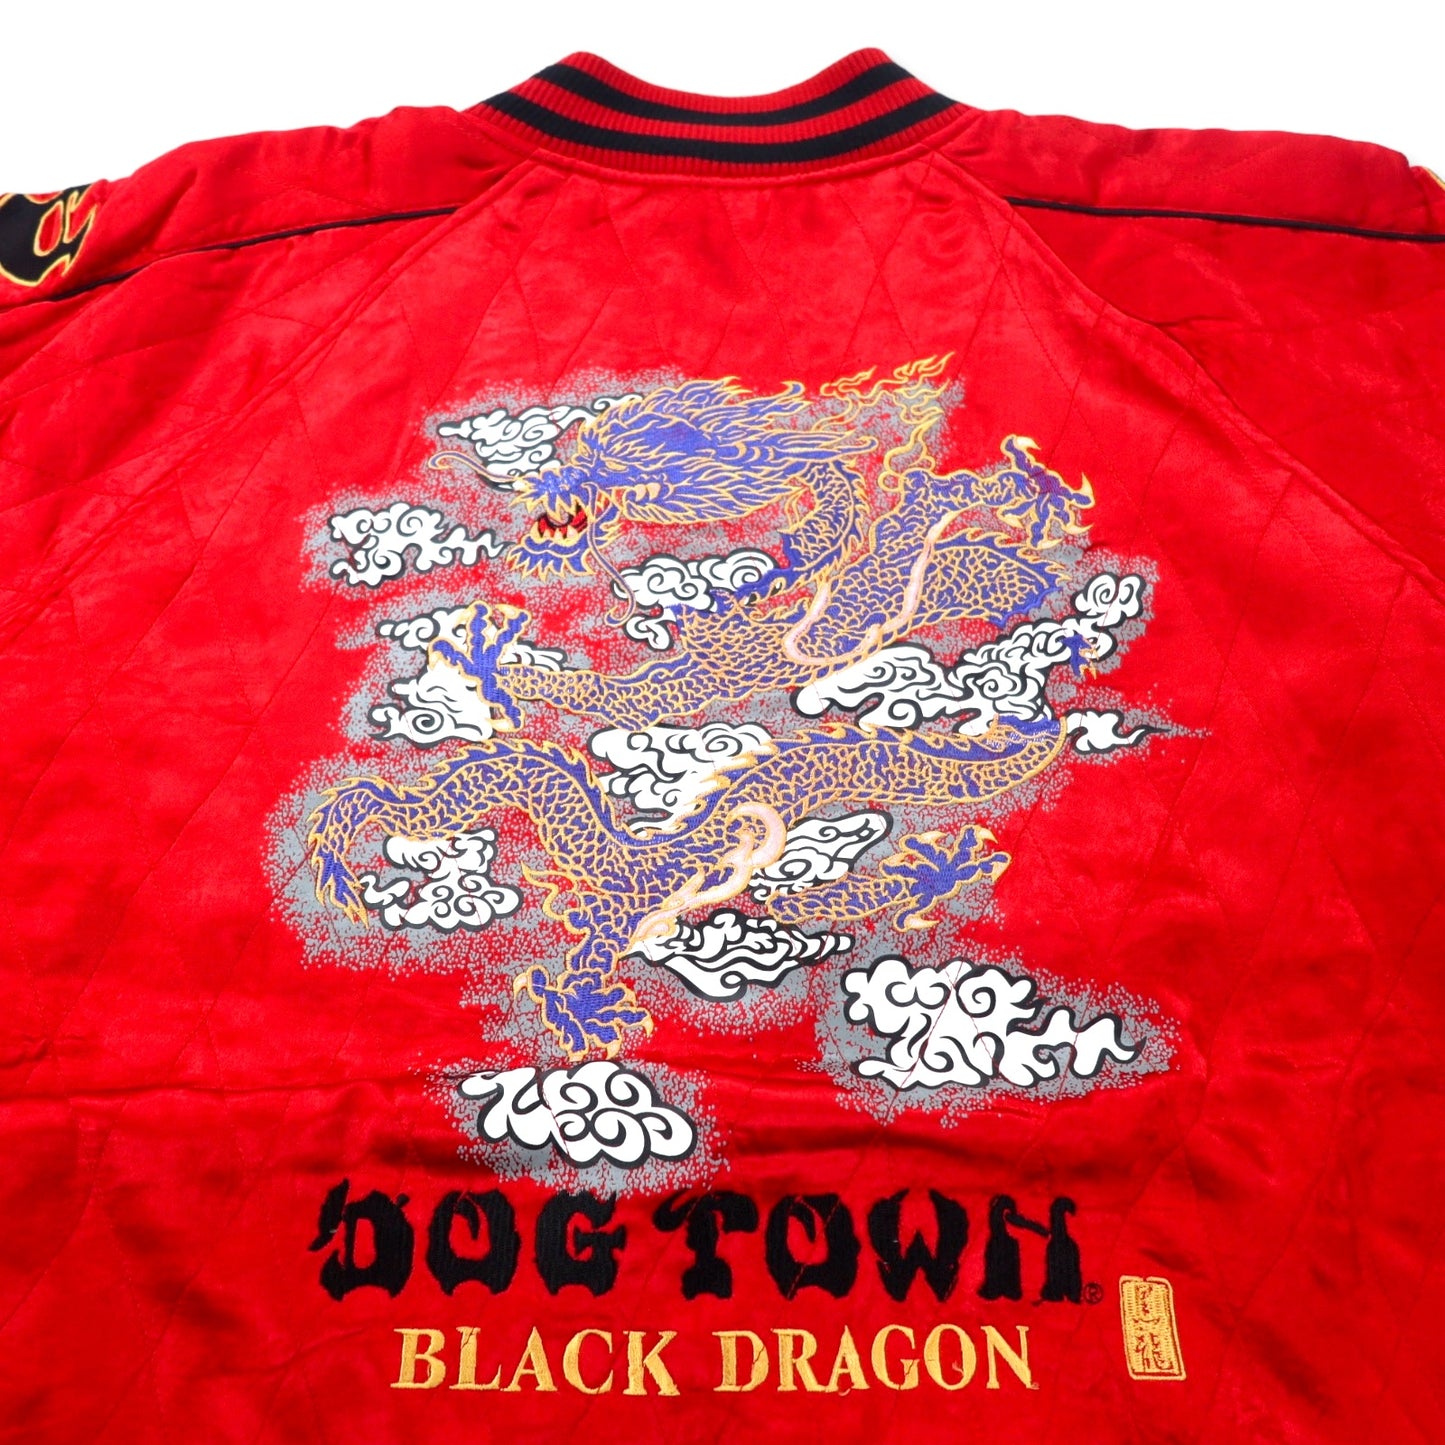 DOG TOWN スカジャン XL レッド レーヨン キルティング 両面刺繍  黒龍 BLACK DRAGON 袖ロゴ